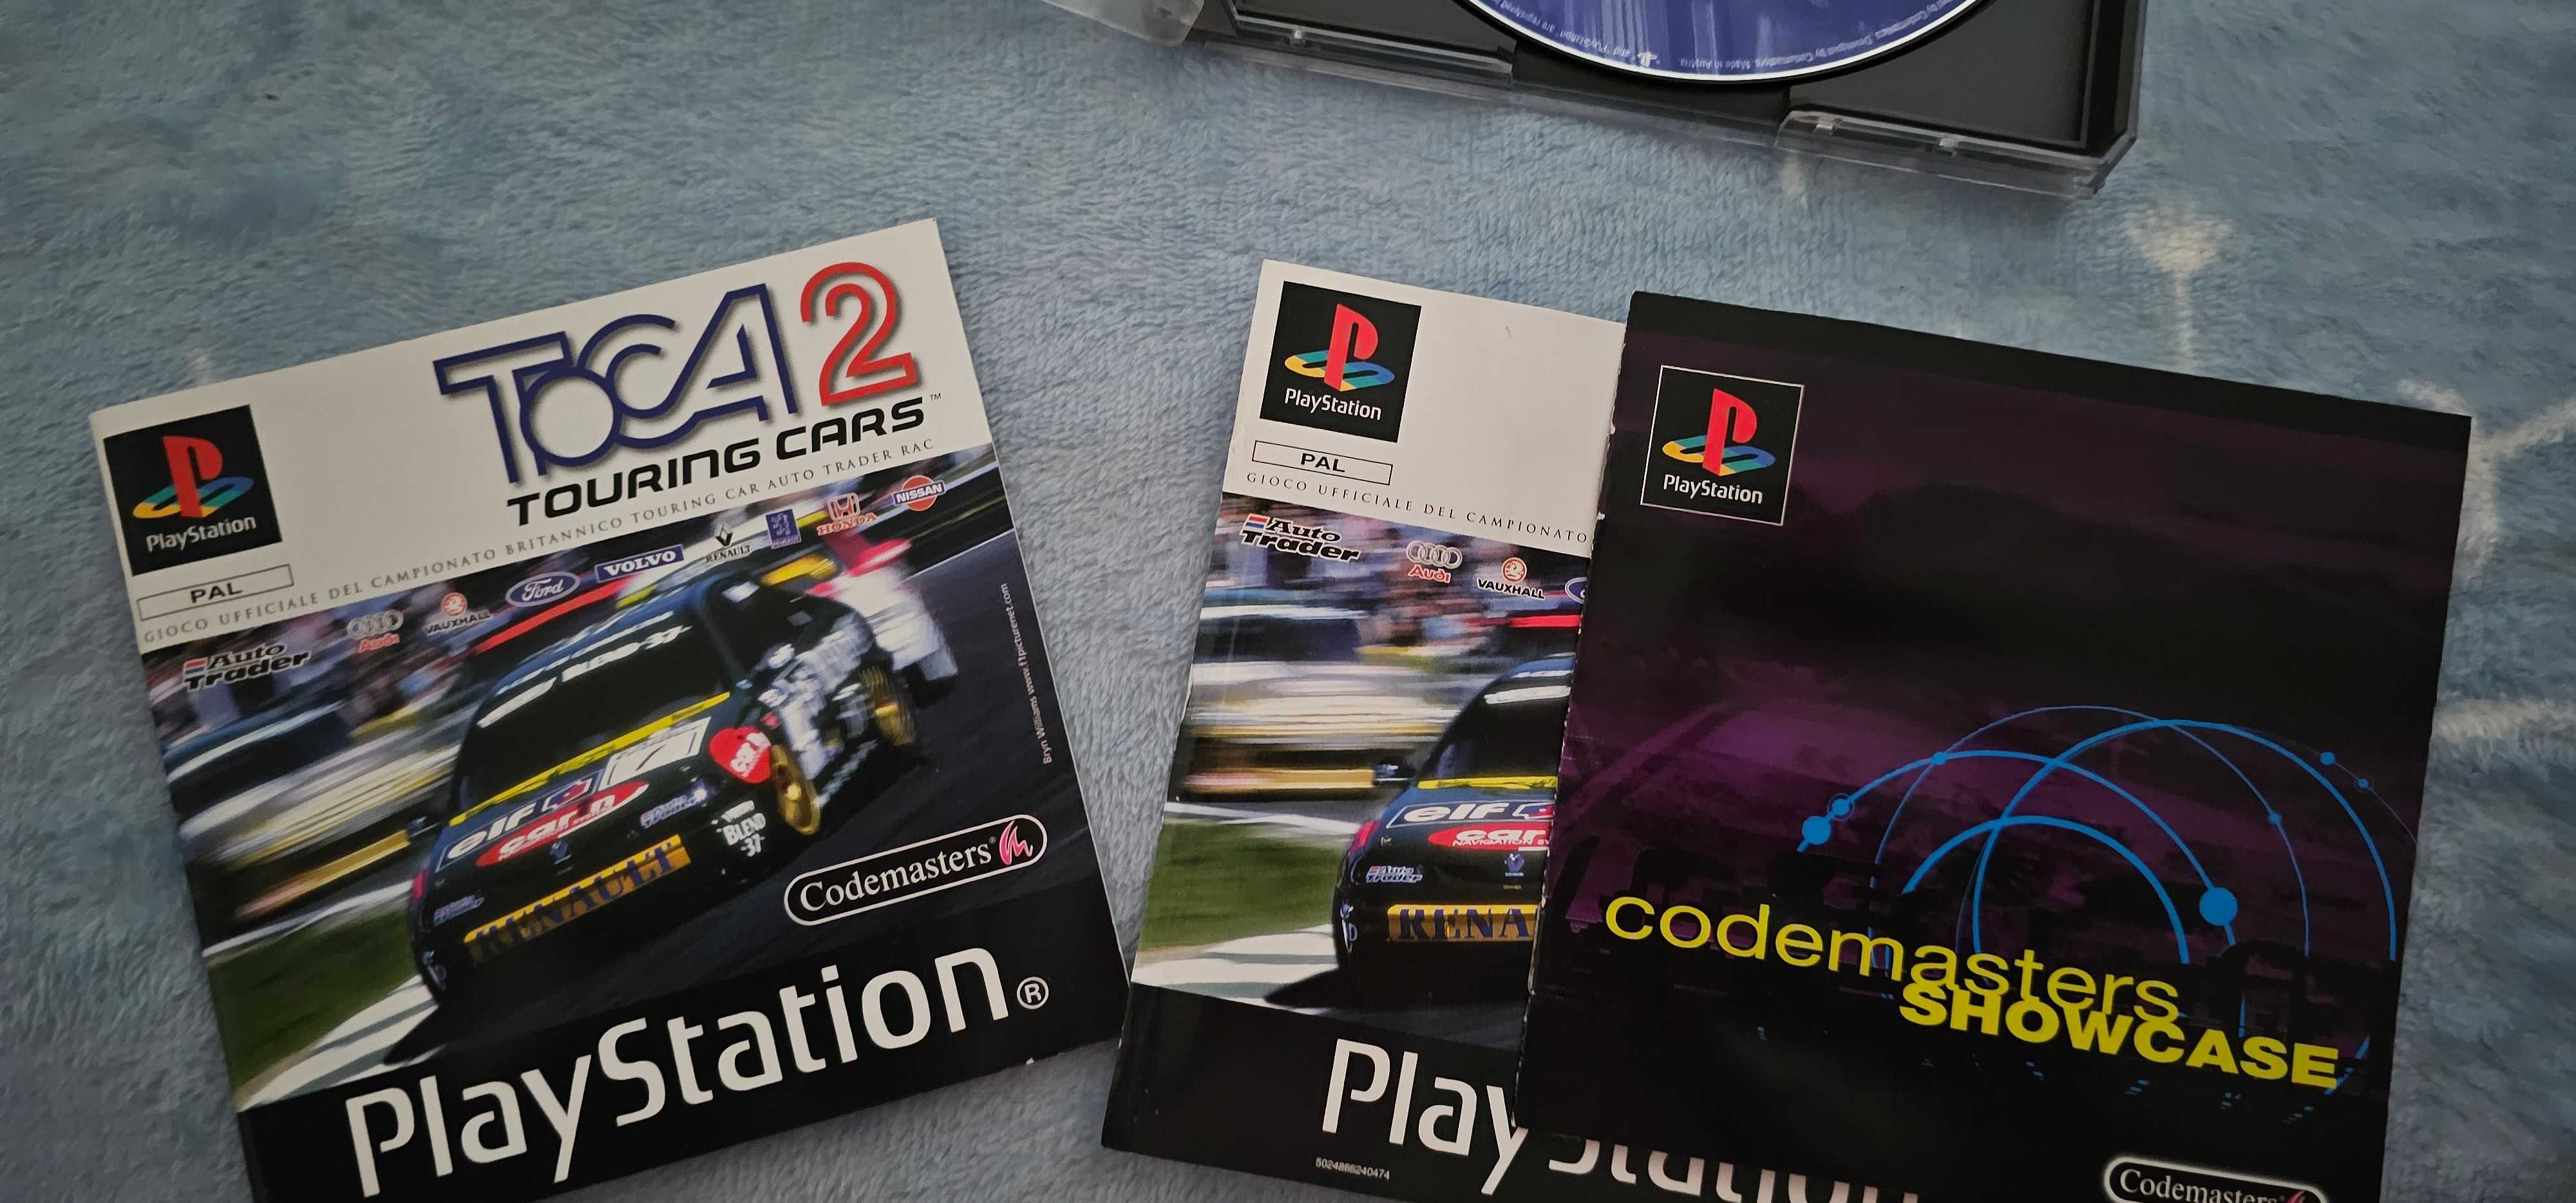 joc Formula One 99 PS1 Playstation 1  toca 2 cadou ps1